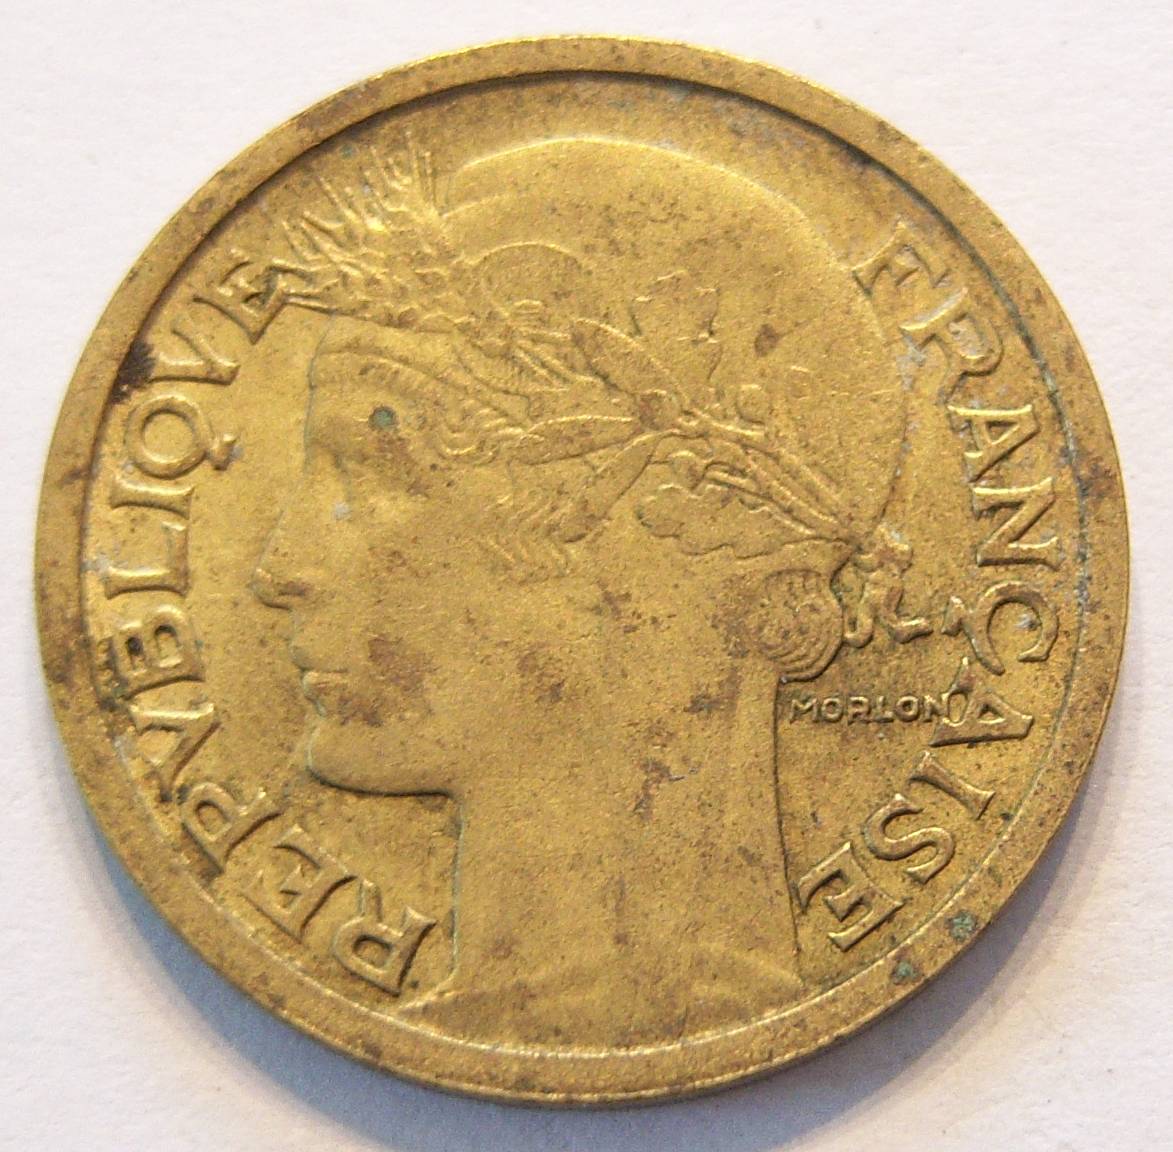  Frankreich 1 Franc 1940   